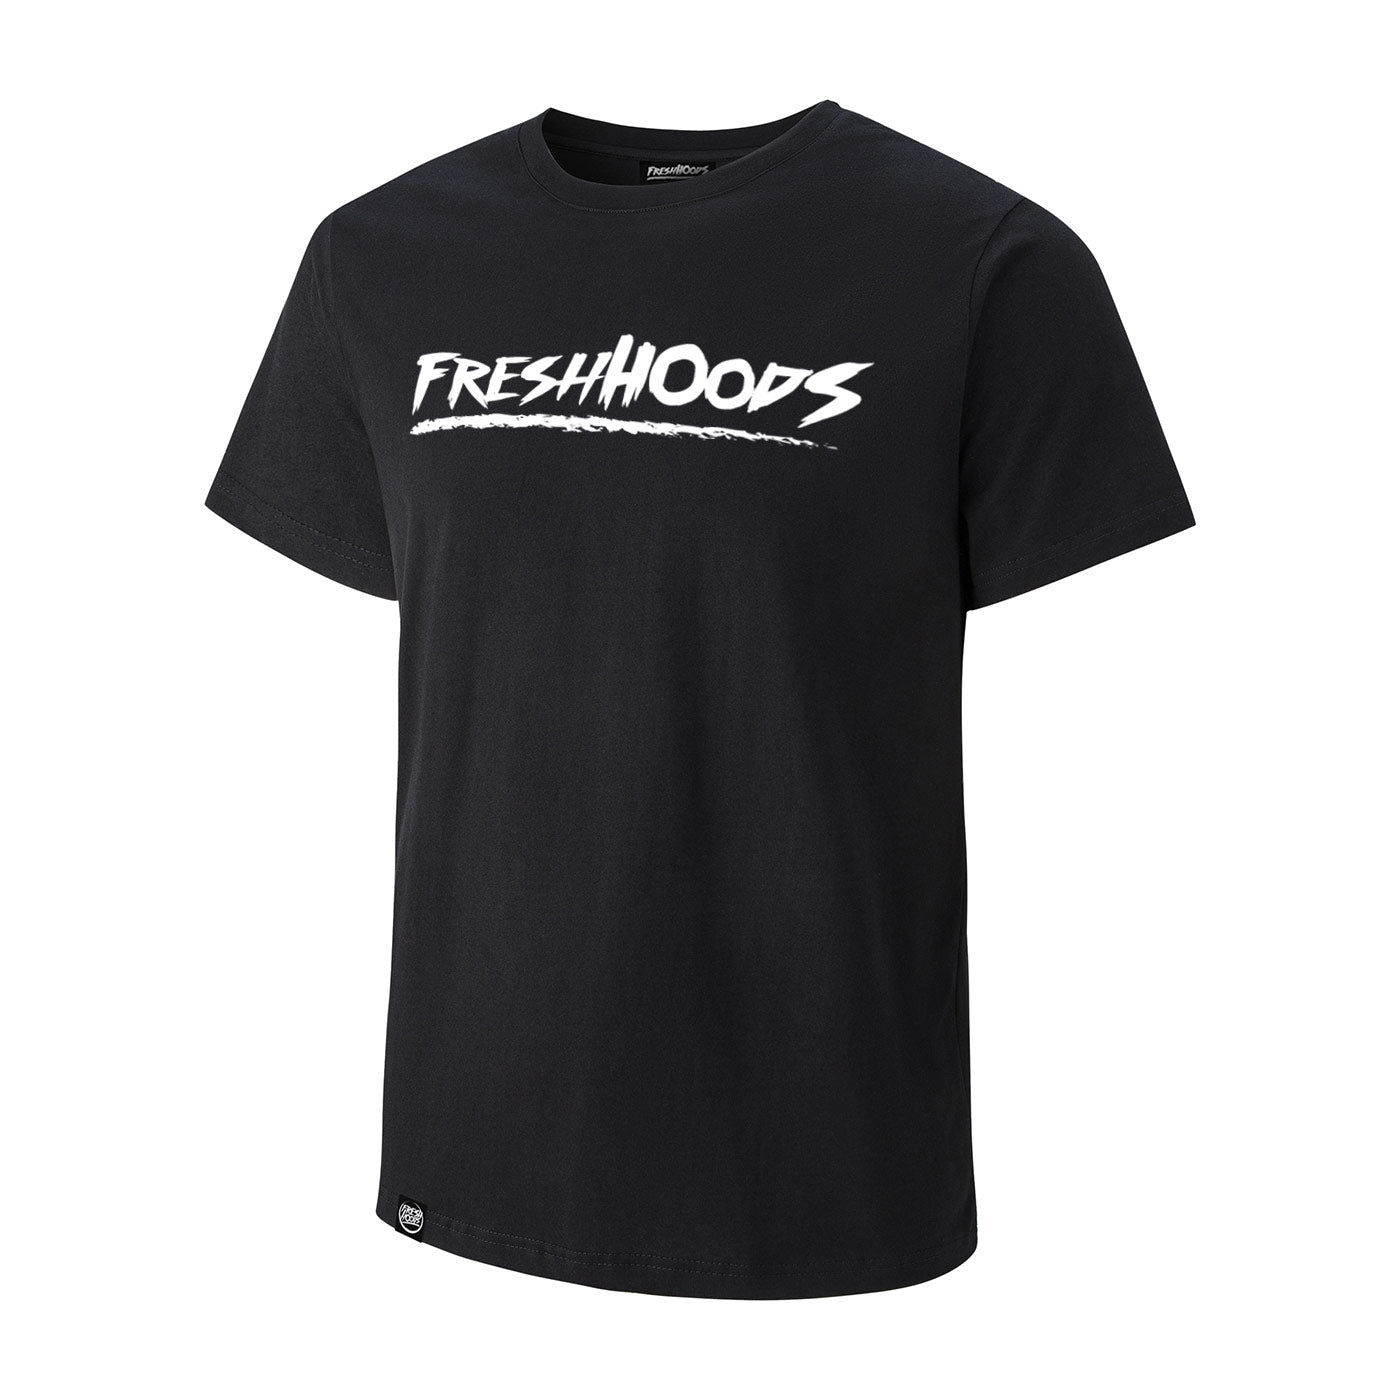 FRESHHOODS Black T-Shirt